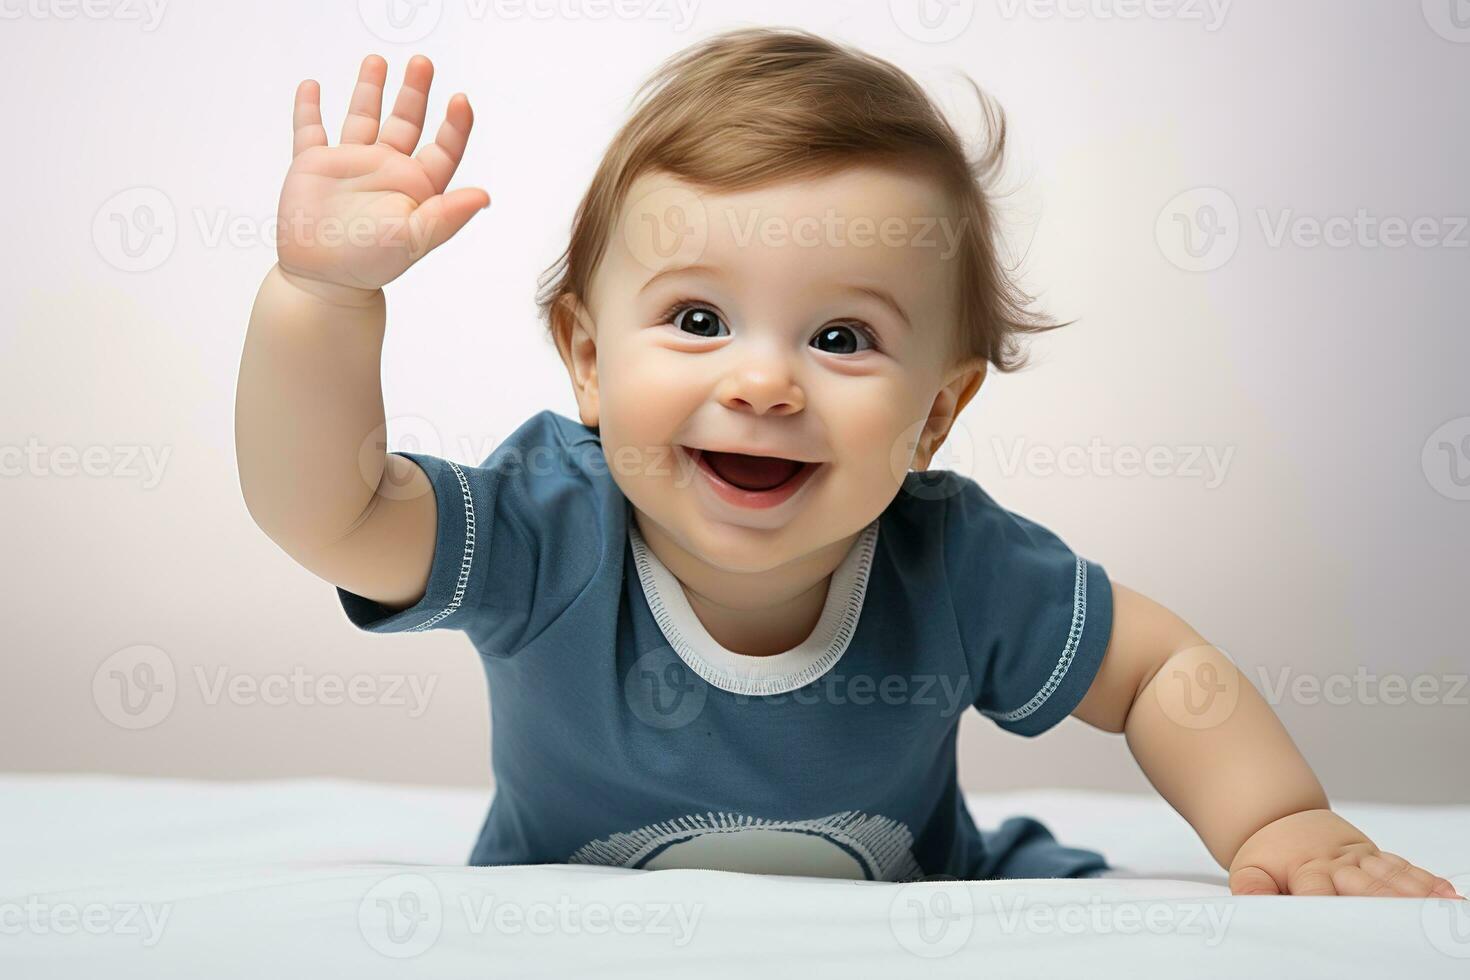 ai generado alegre bebé en un suave blanco cama alcanza fuera con un minúsculo mano, sonriente en broma en contra un limpio, ligero fondo, capturar un momento de inocente curiosidad. foto